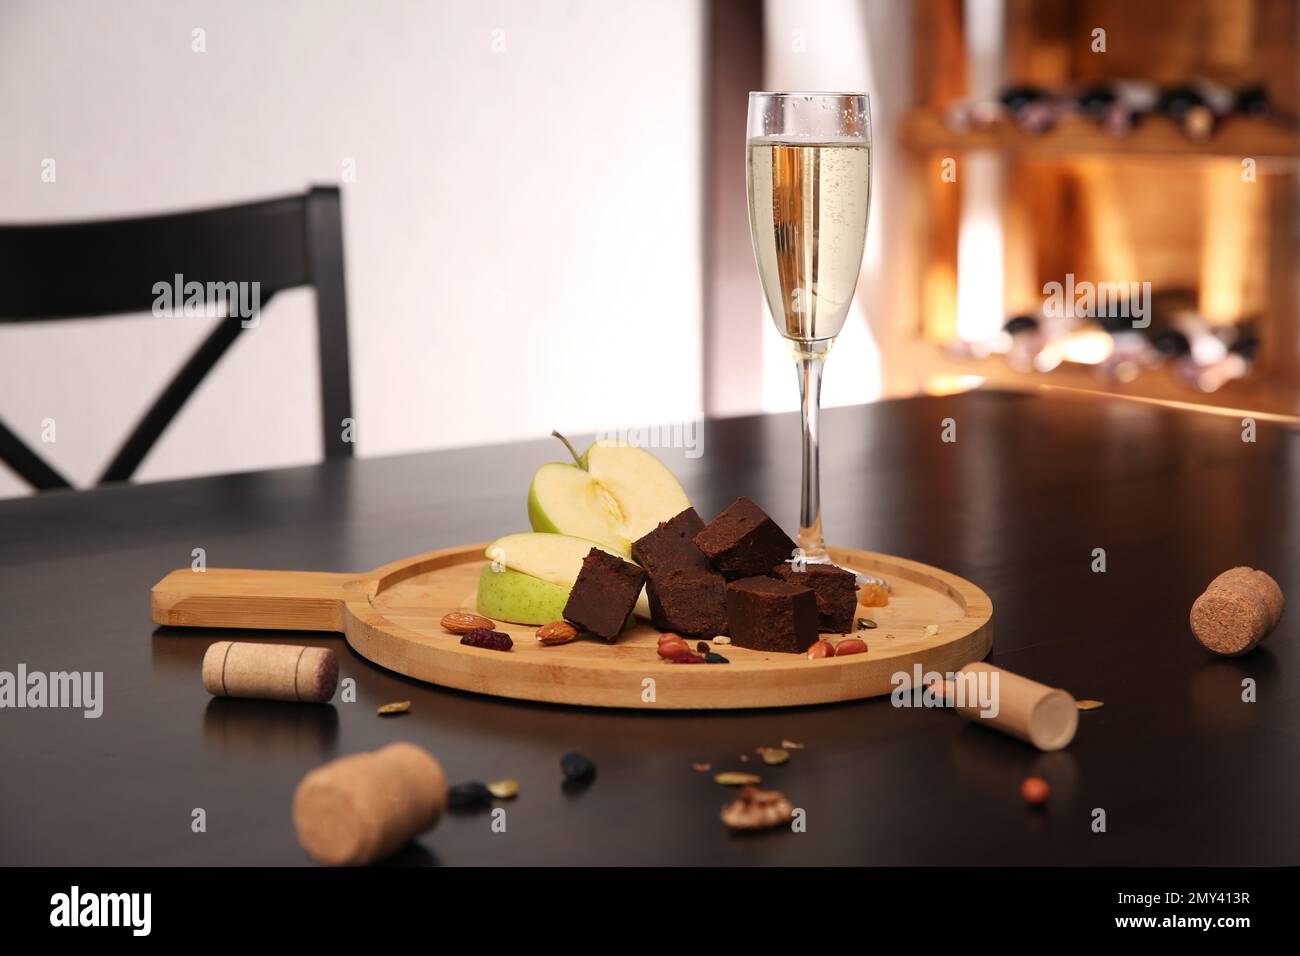 Delizioso formaggio brunost, mela e bicchiere di champagne sul tavolo Foto Stock